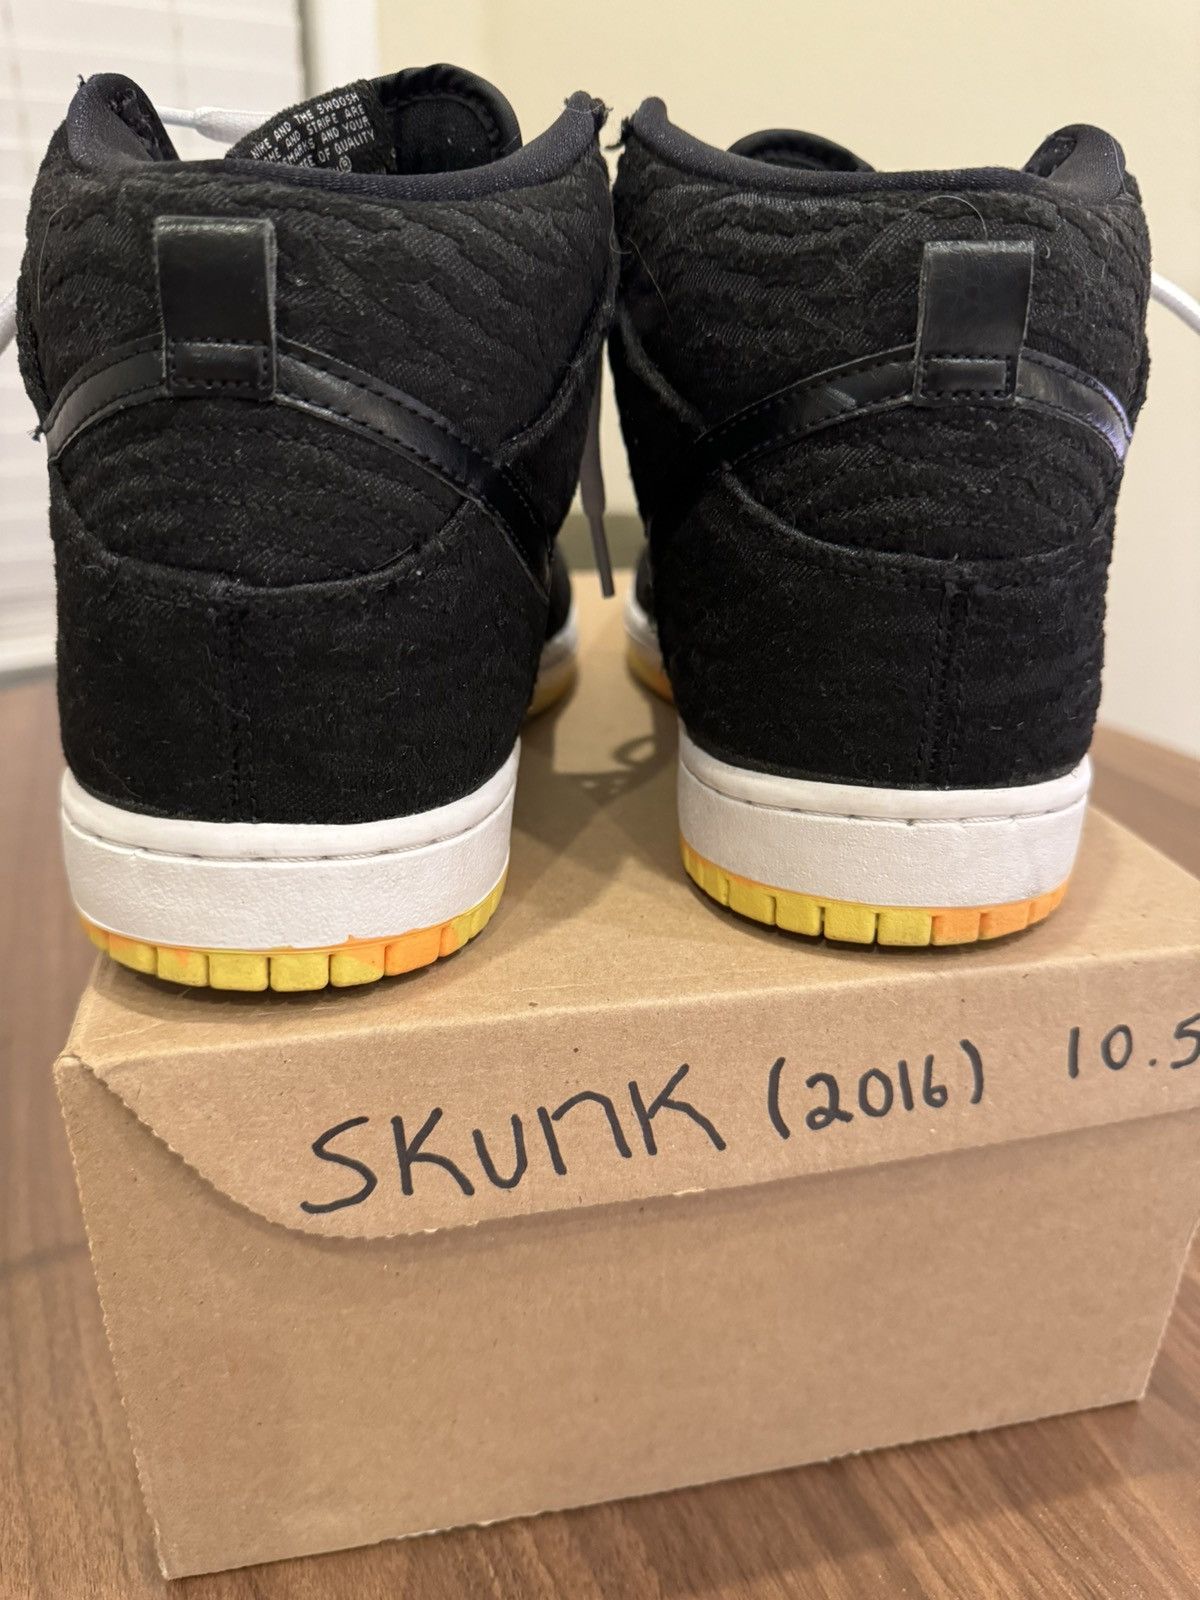 Nike Nike SB Dunk High Black Skunk | 305050-034 | 10.5 | Grailed